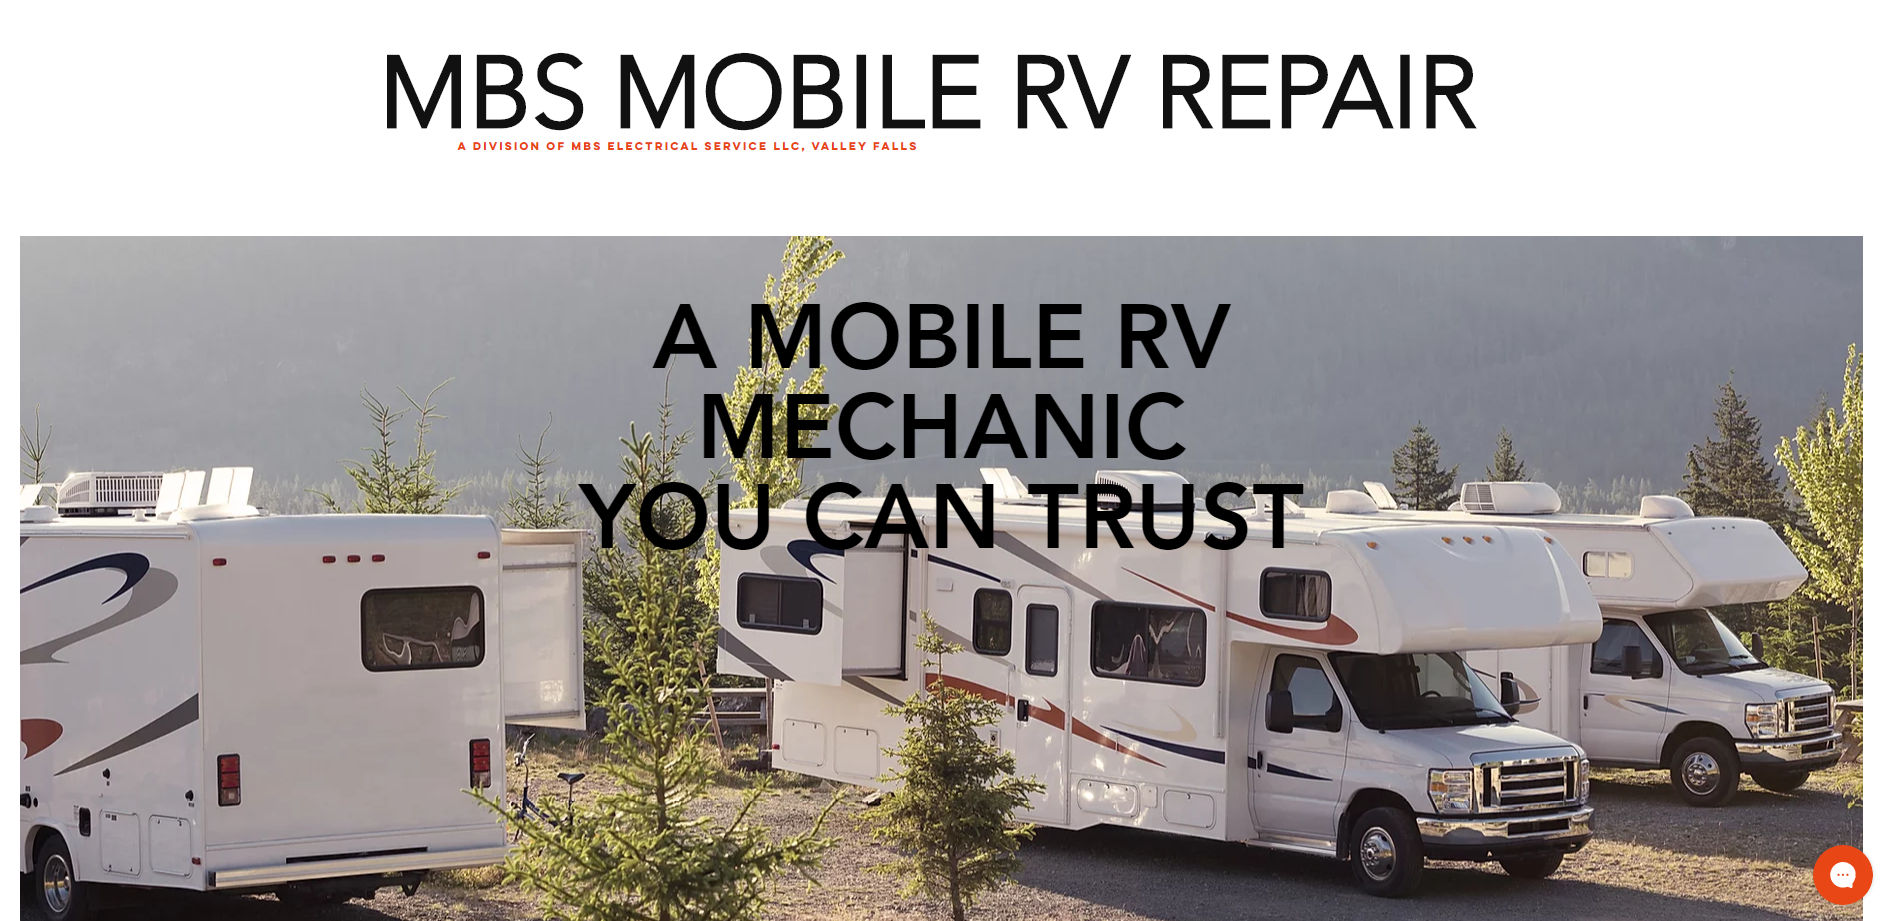 MBS Mobile RV Repair